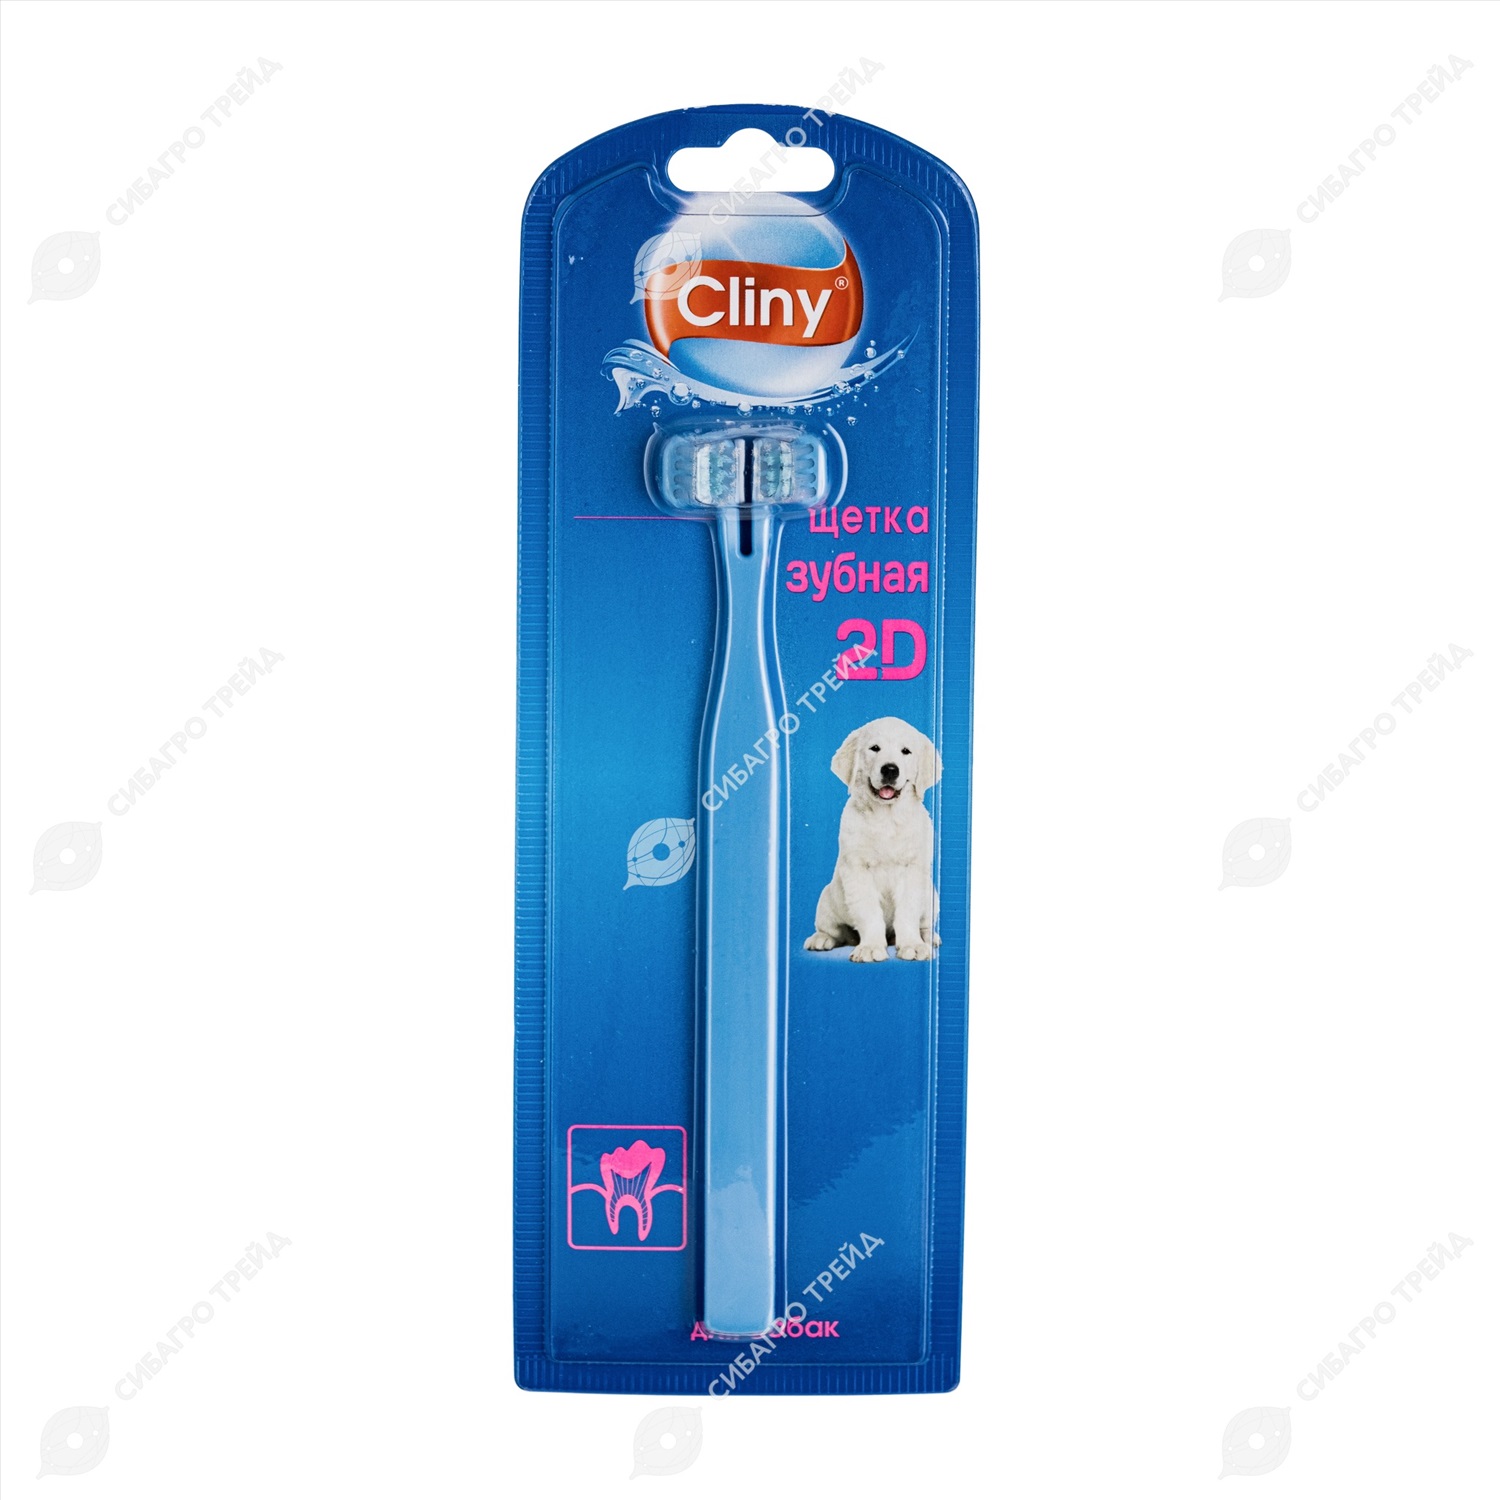 Cliny зубная щетка 2d ирригатор это что такое для носа